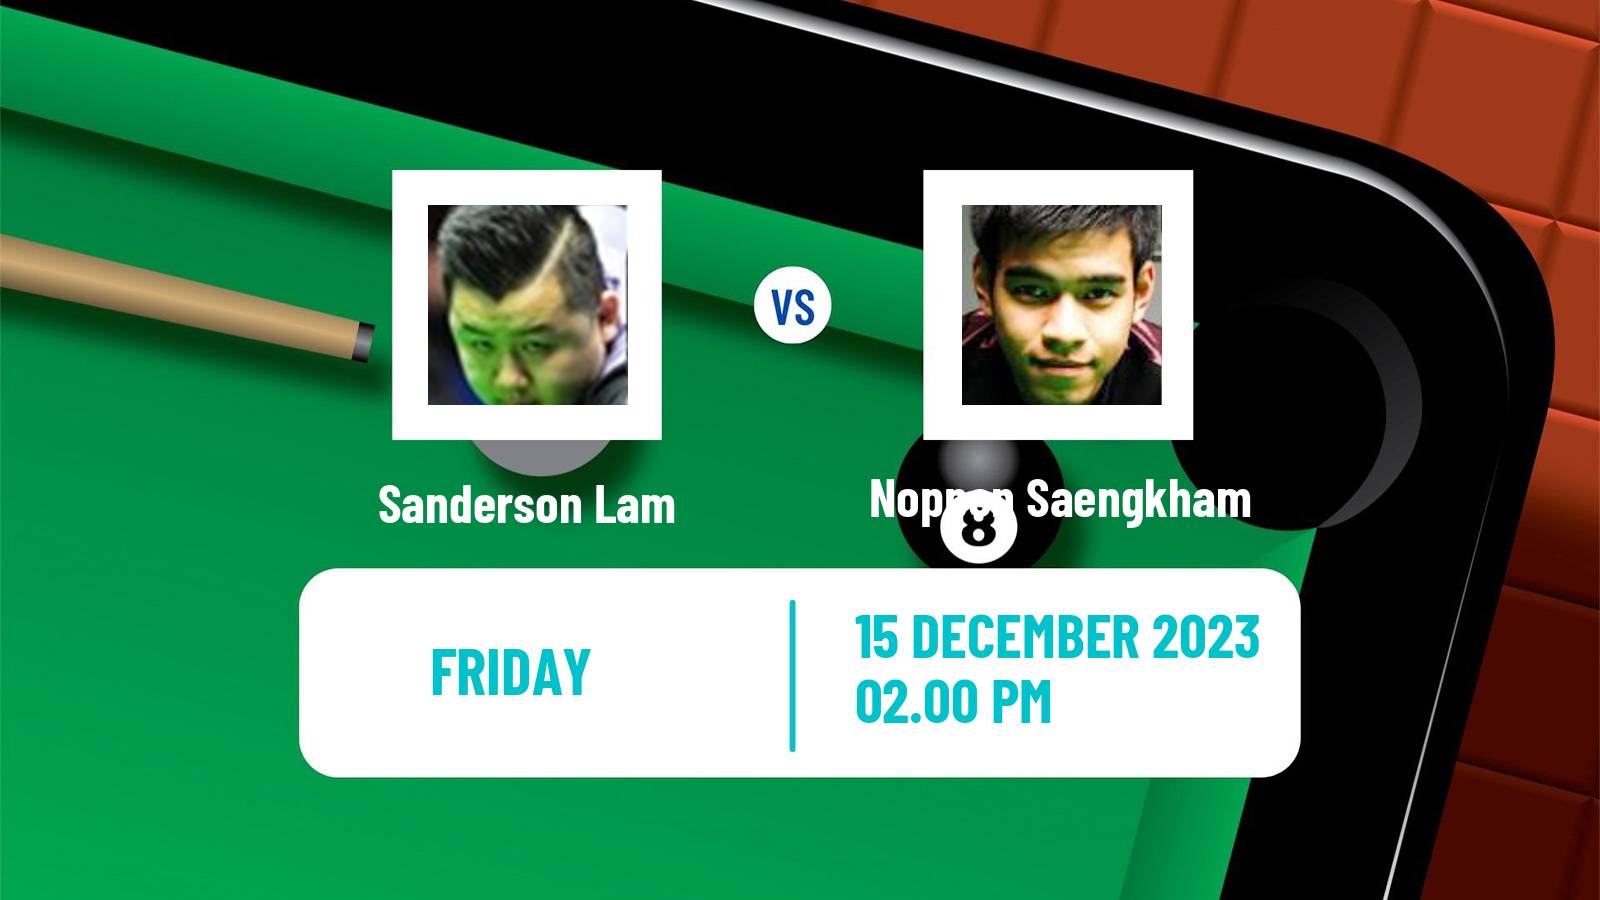 Snooker Scottish Open Sanderson Lam - Noppon Saengkham